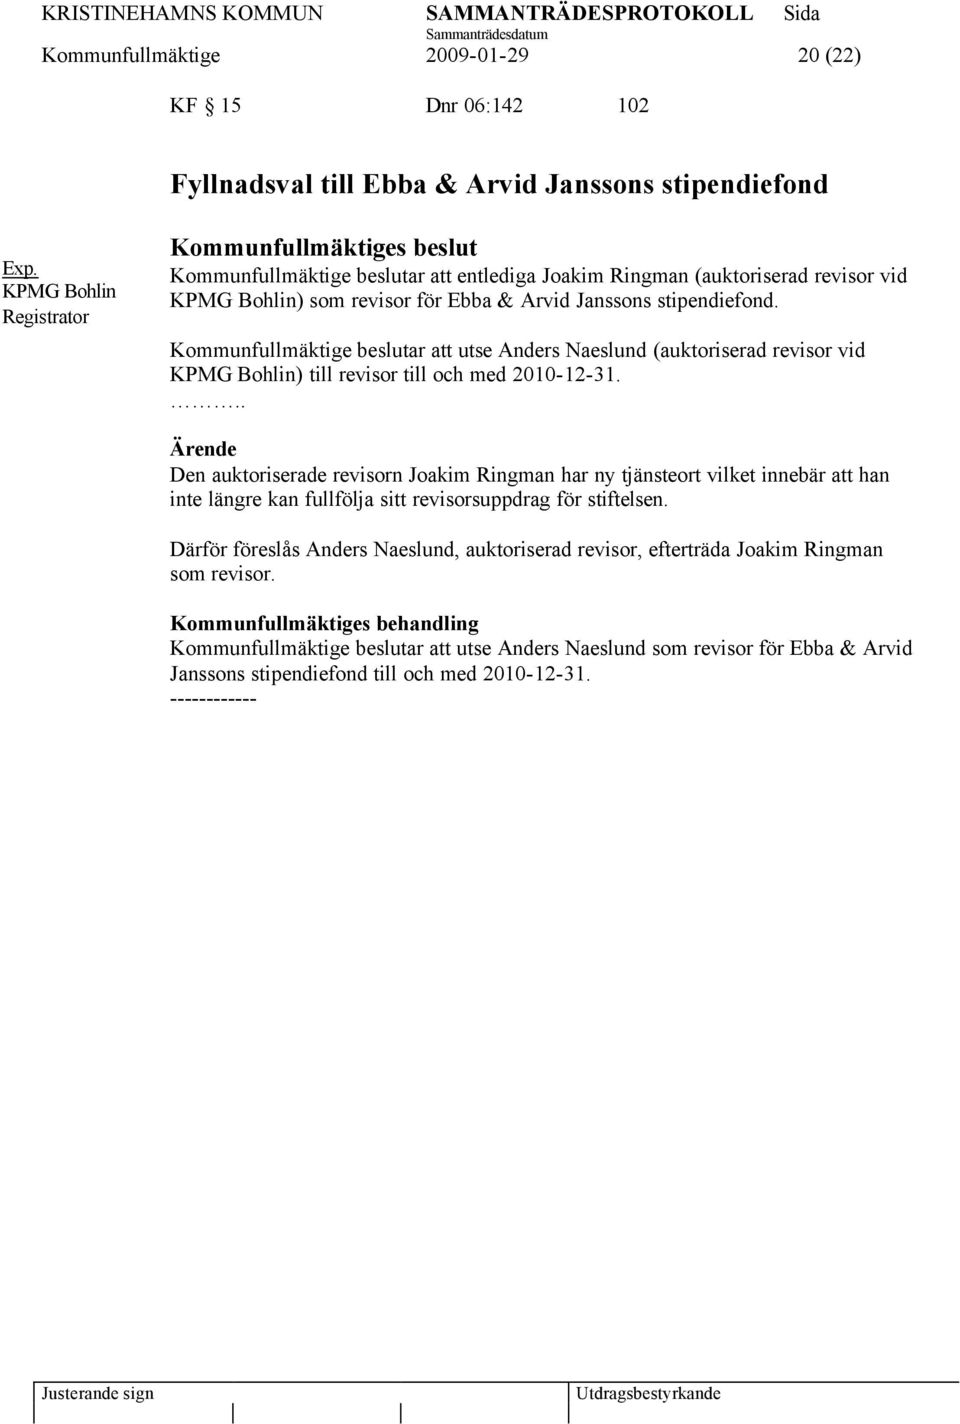 Kommunfullmäktige beslutar att utse Anders Naeslund (auktoriserad revisor vid KPMG Bohlin) till revisor till och med 2010-12-31.